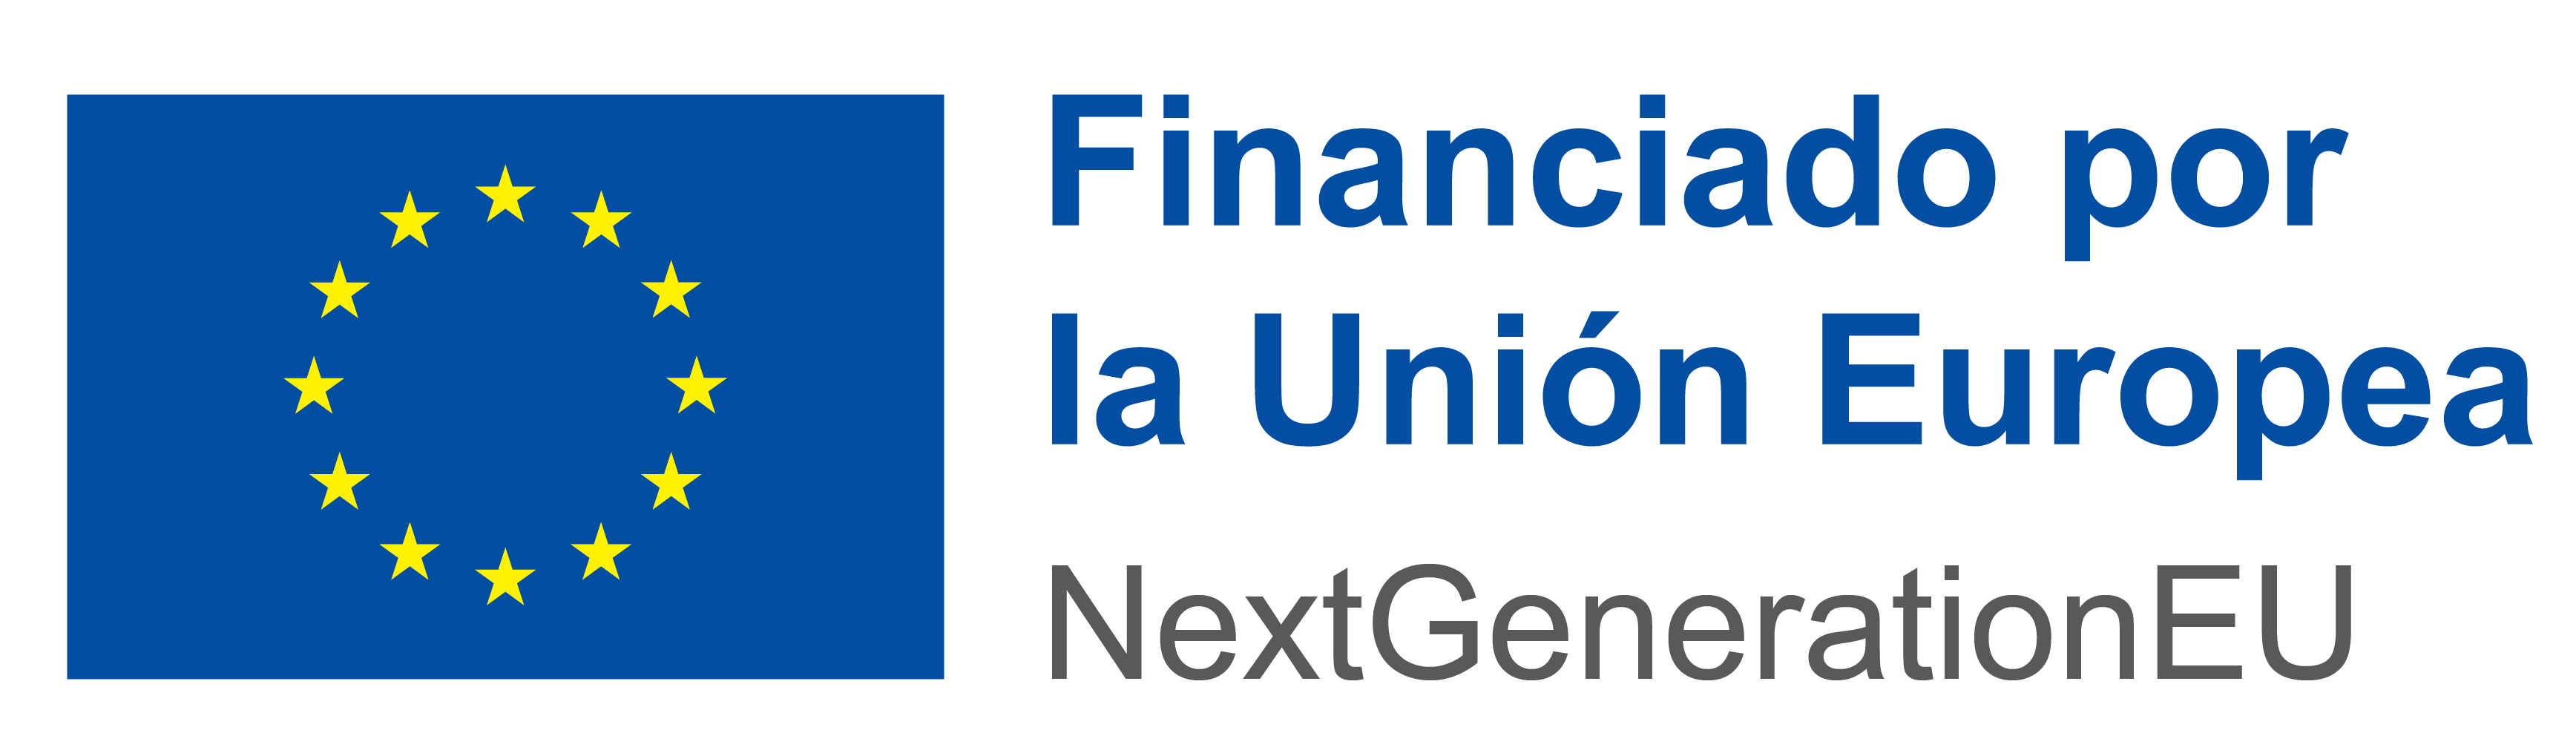 FONDOS FEDER + emblema de la Unión Europea + Financiado por la Unión Europa - NextGenerationEU